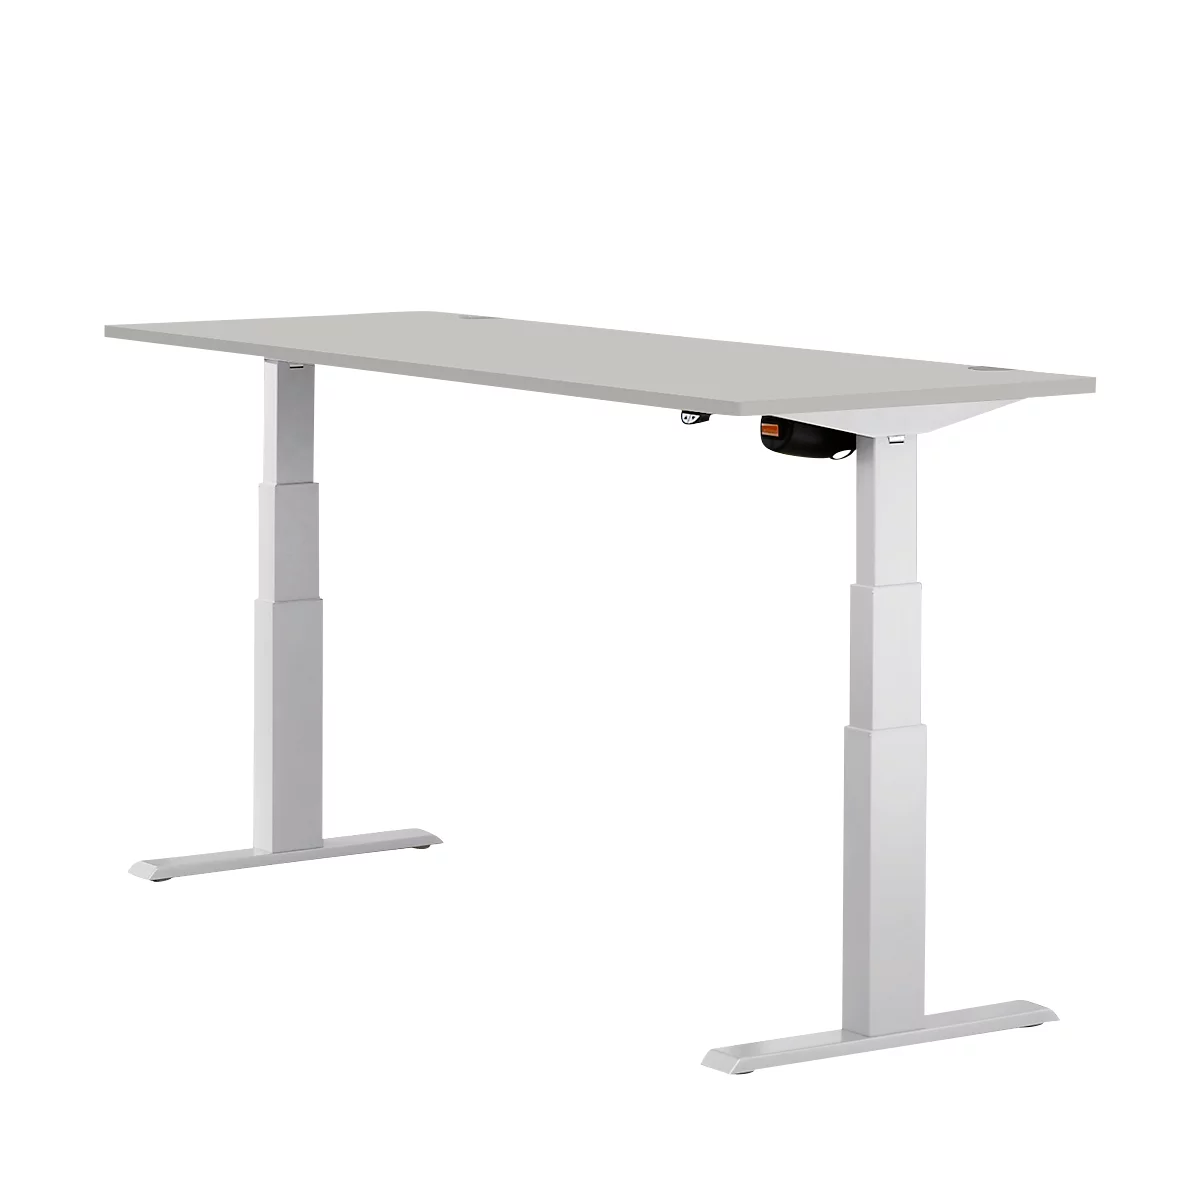 Schäfer Shop Select ERGO-T escritorio, regulable eléctricamente en altura, rectangular, pie en T, ancho 1800 x fondo 800 x alto 640-1300 mm, aluminio gris claro/blanco